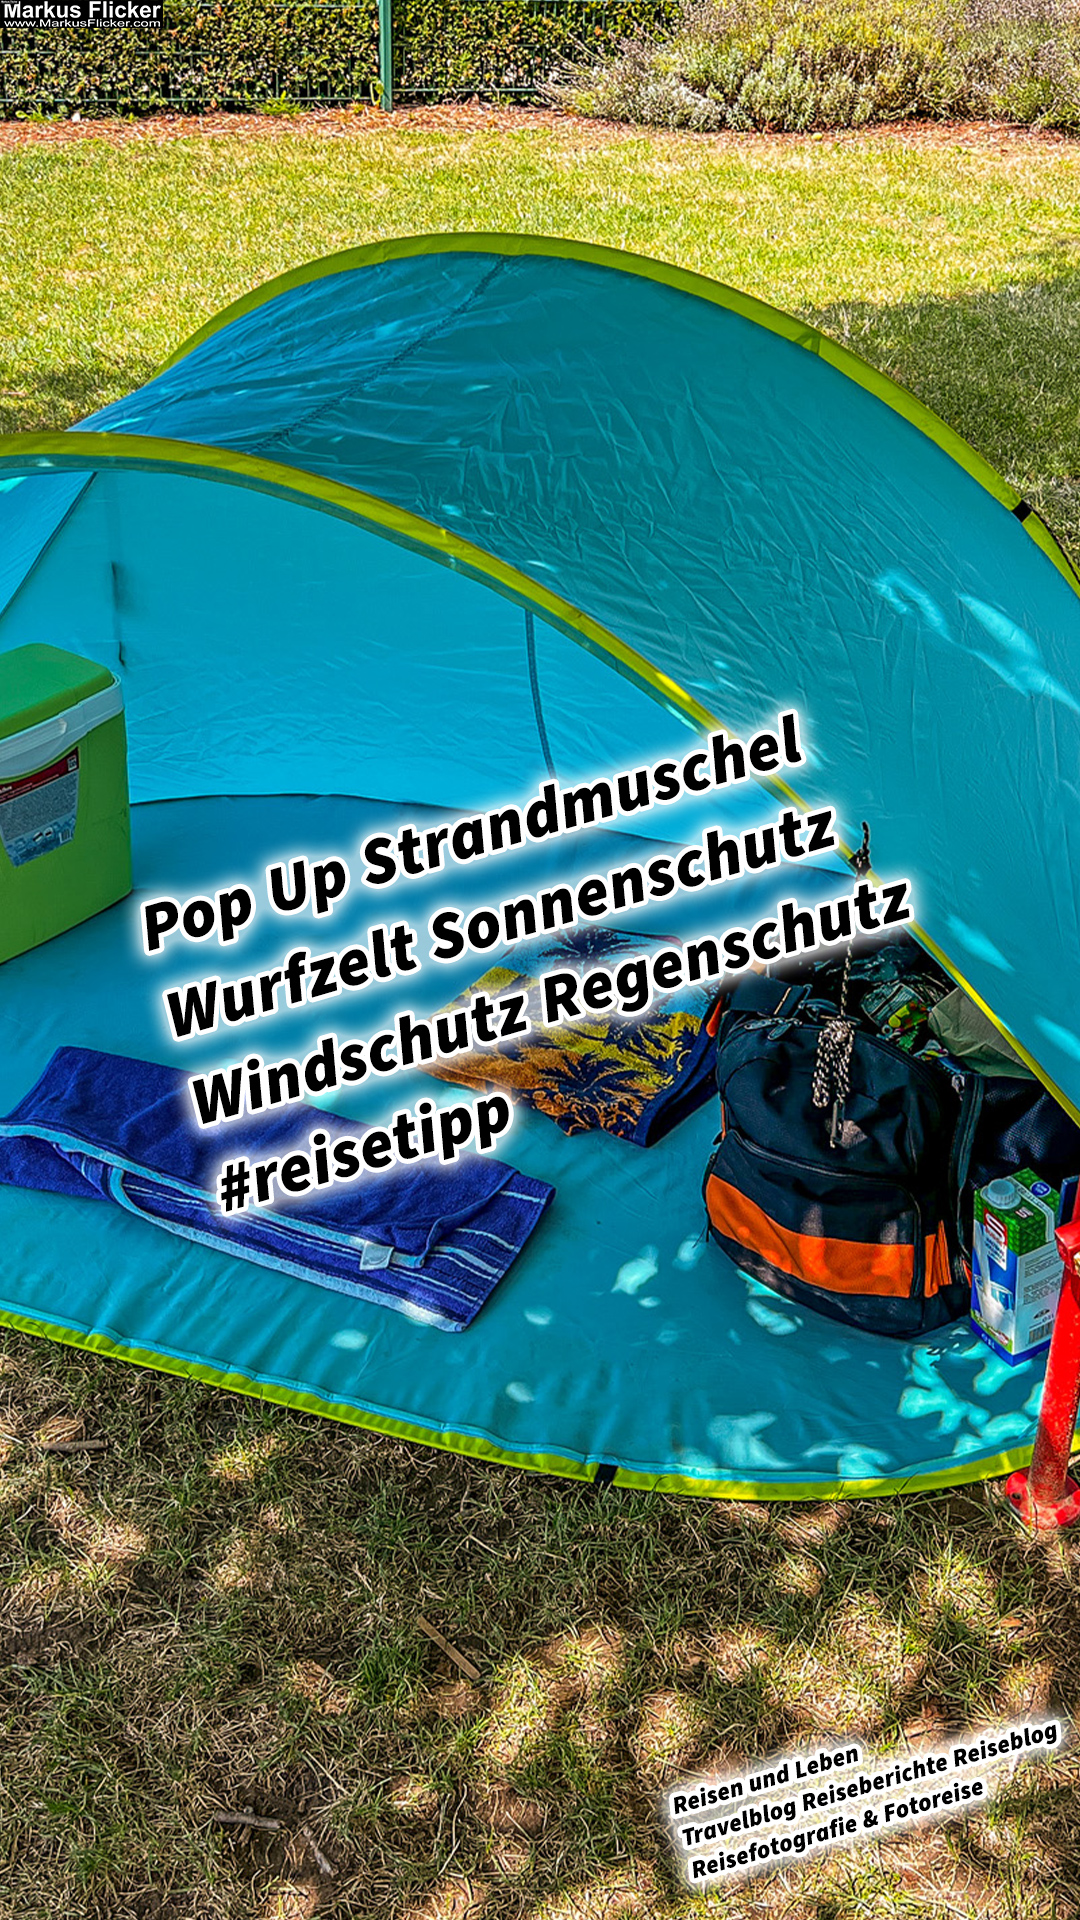 Pop Up Strandmuschel Wurfzelt Sonnenschutz Windschutz Regenschutz #reisetipp